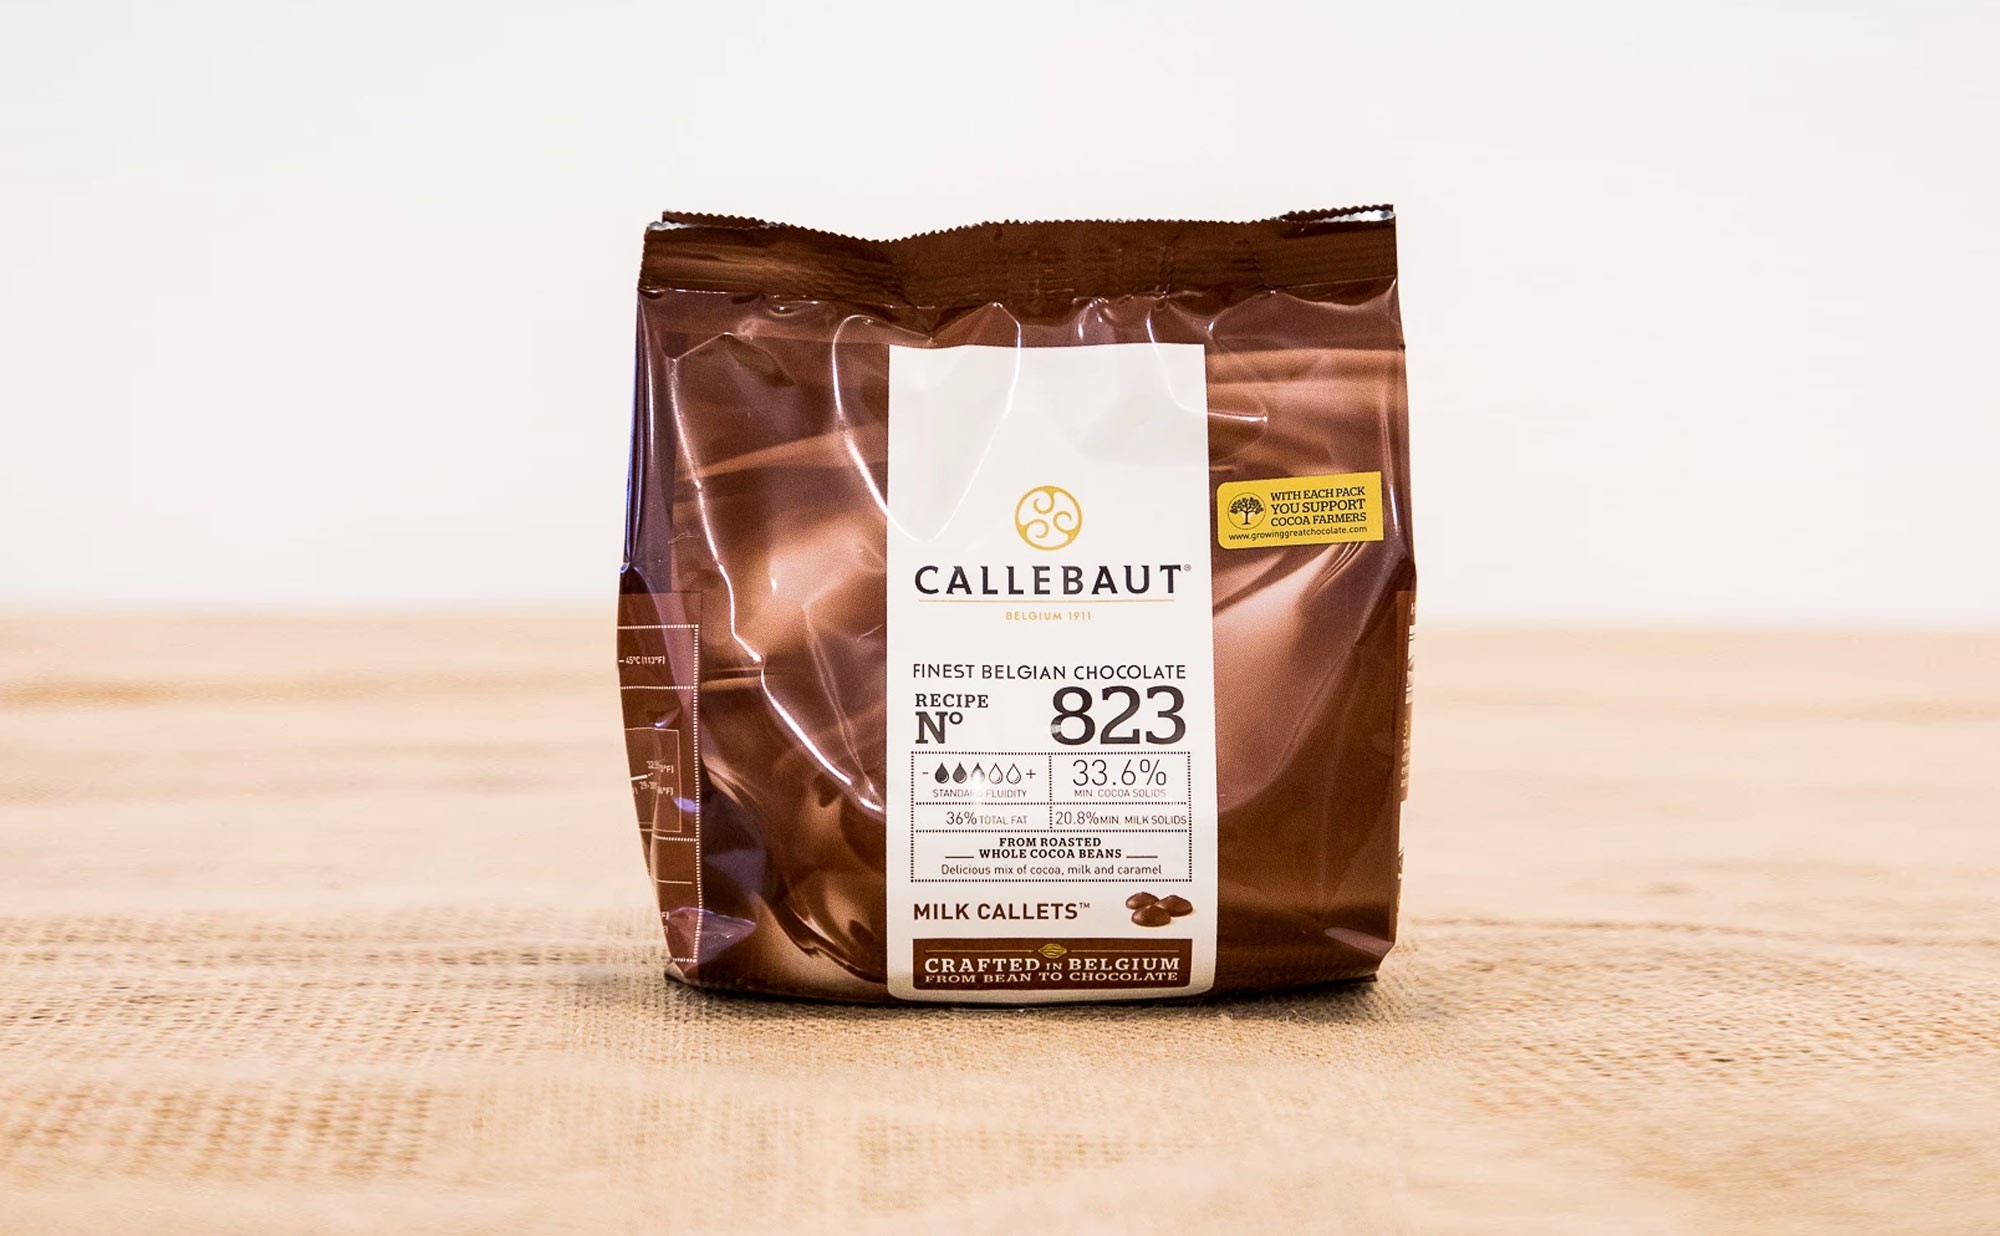 Achetez votre chocolat Callebaut au meilleur prix sur notre site.